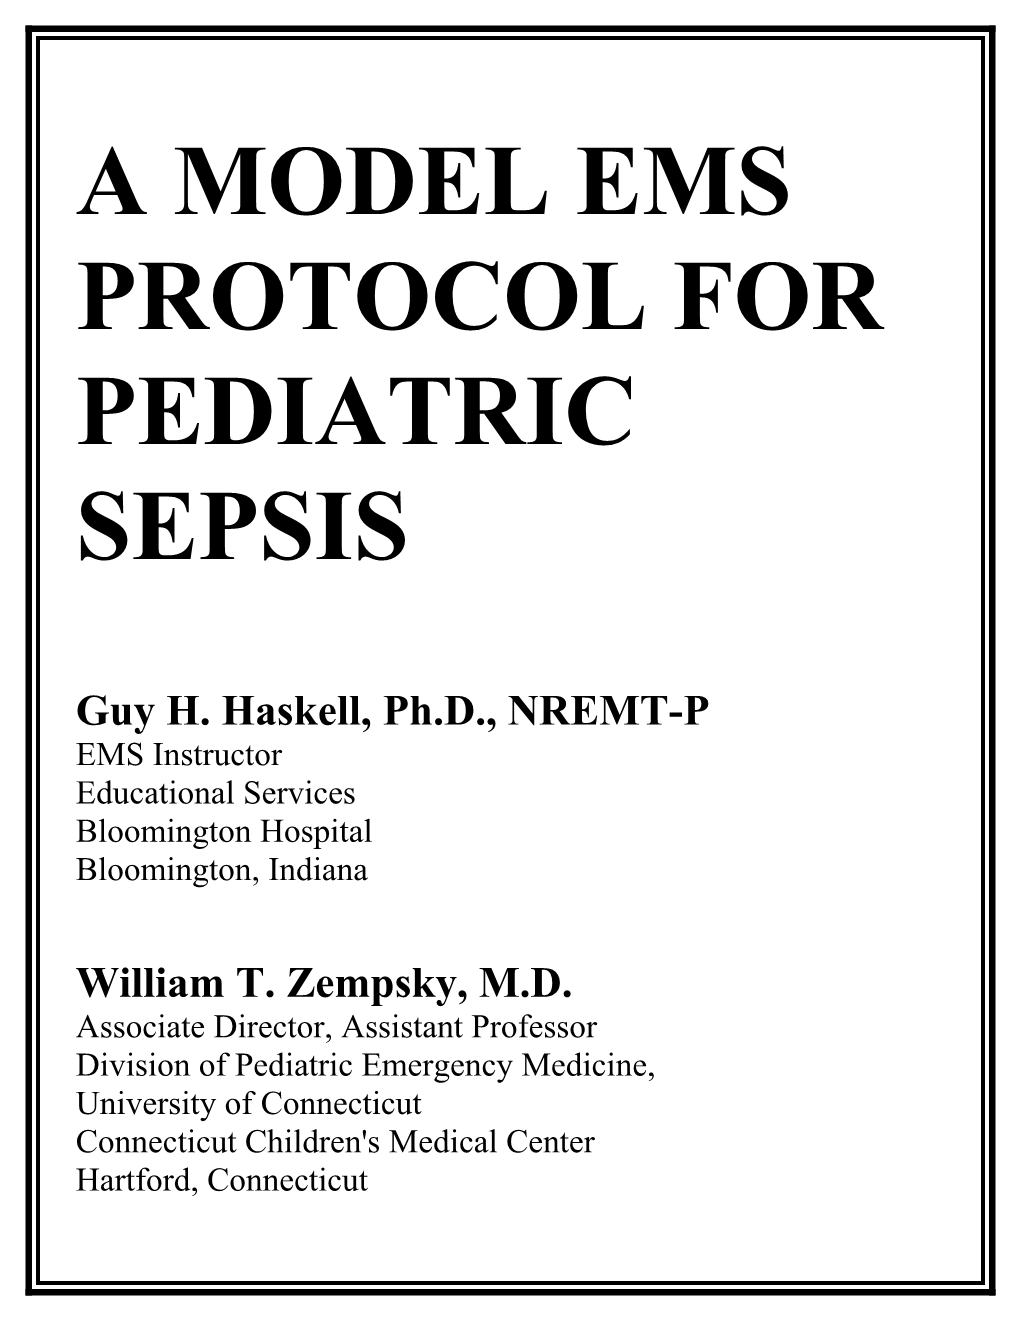 Model Ems Protocol for Pediatric Sepsis